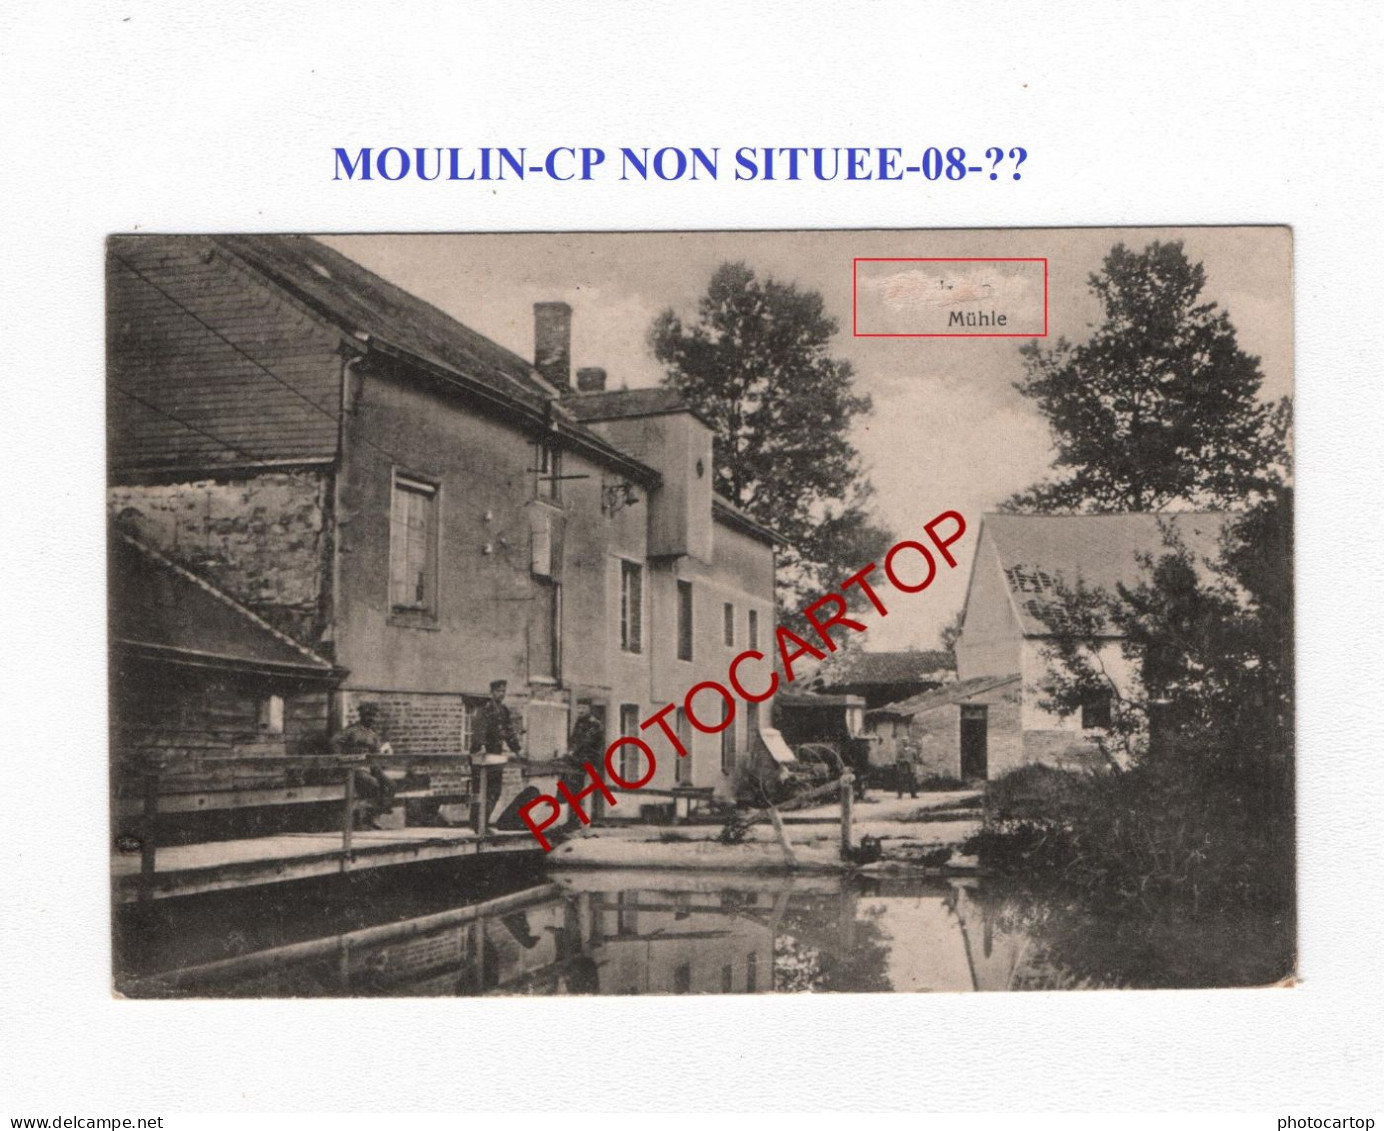 Moulin-CP NON SITUEE-08-??-CARTE Imprimee Allemande-Guerre 14-18-1 WK-France-FELDPOST - Moulins à Eau